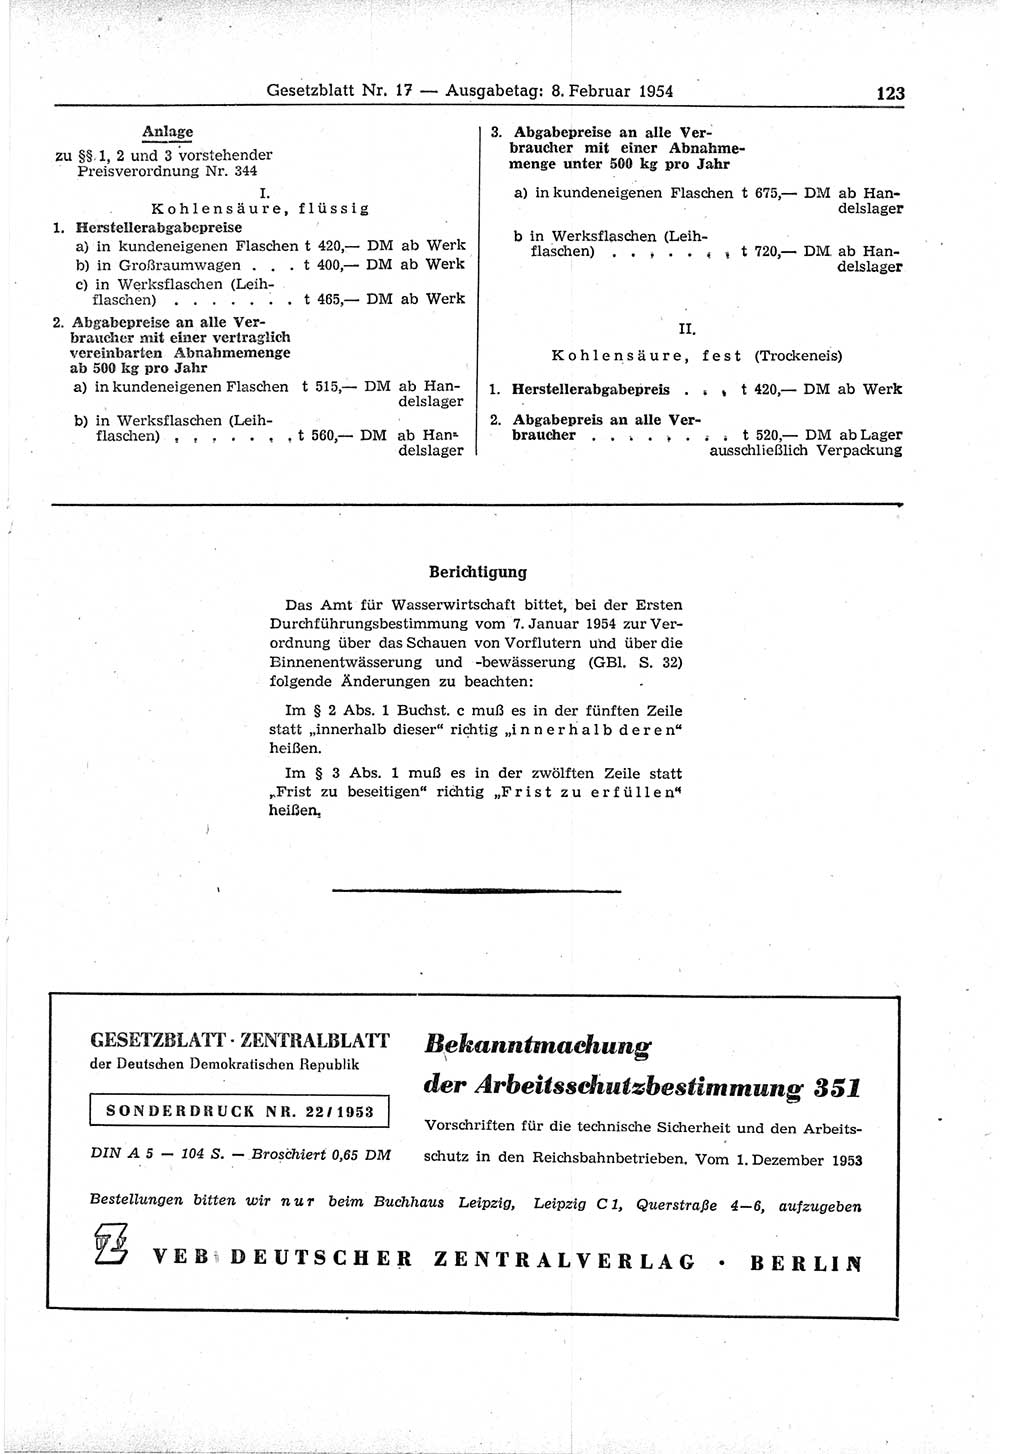 Gesetzblatt (GBl.) der Deutschen Demokratischen Republik (DDR) 1954, Seite 123 (GBl. DDR 1954, S. 123)